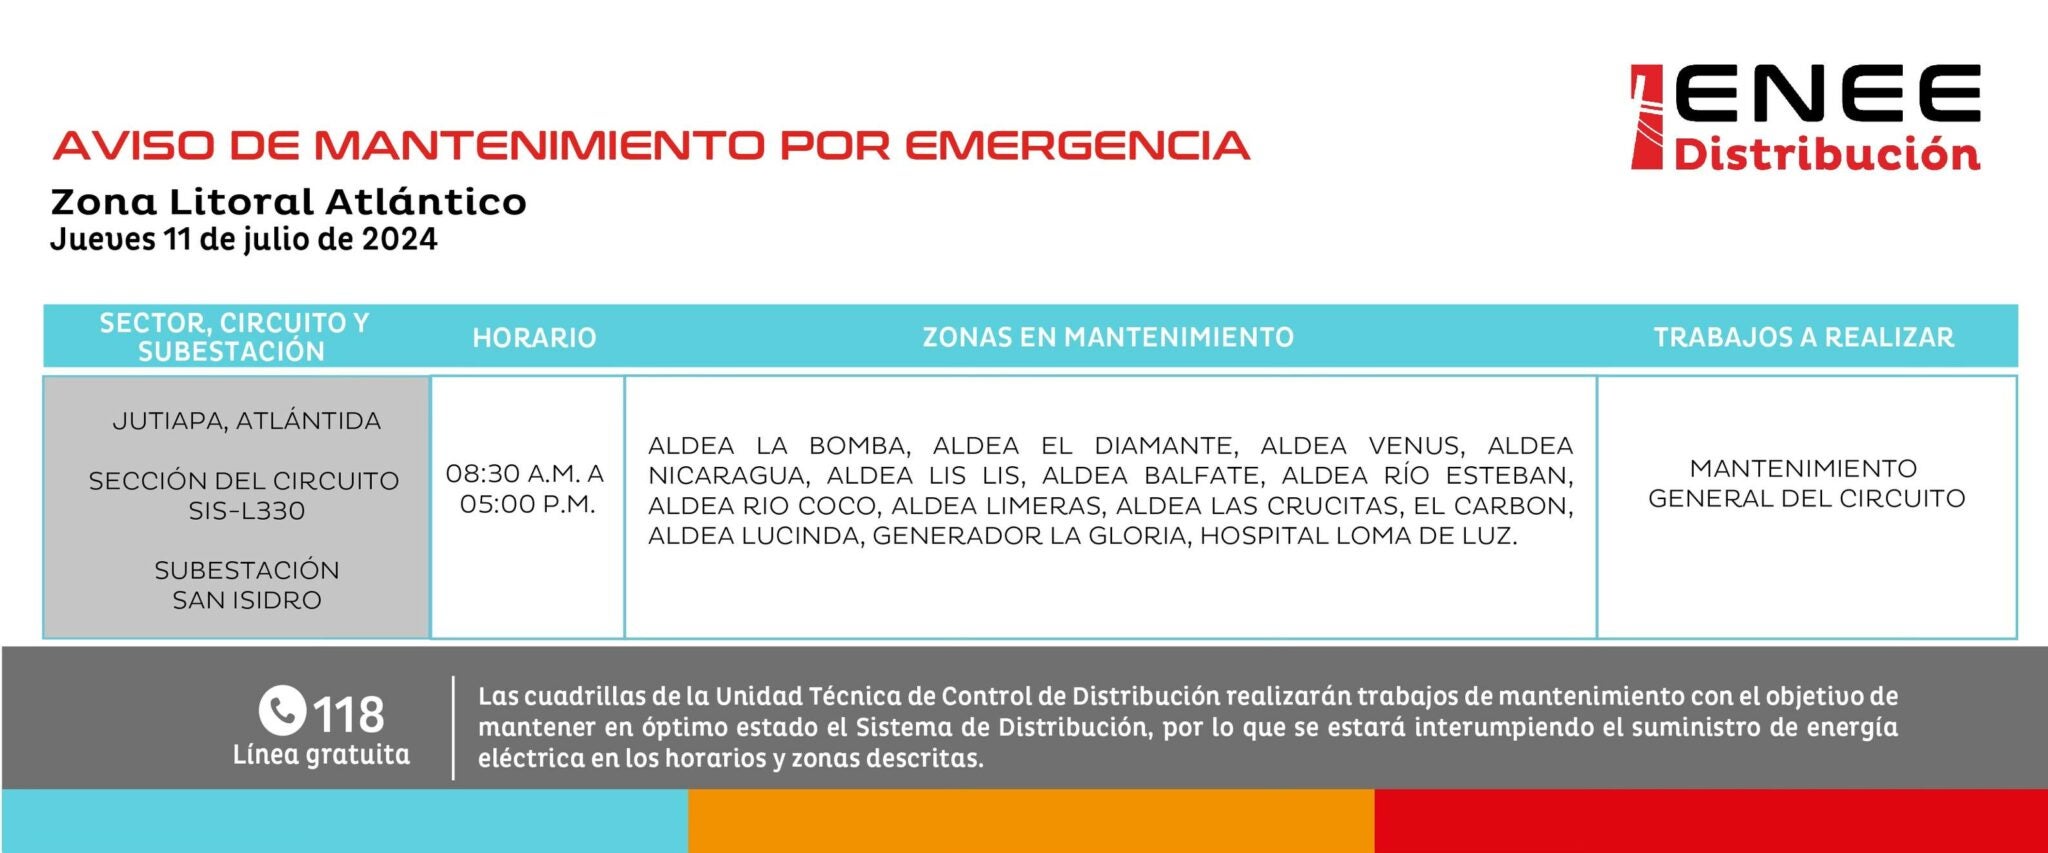 Anuncia cortes de energía en Choluteca, Copán, Francisco Morazán y otros departamentos